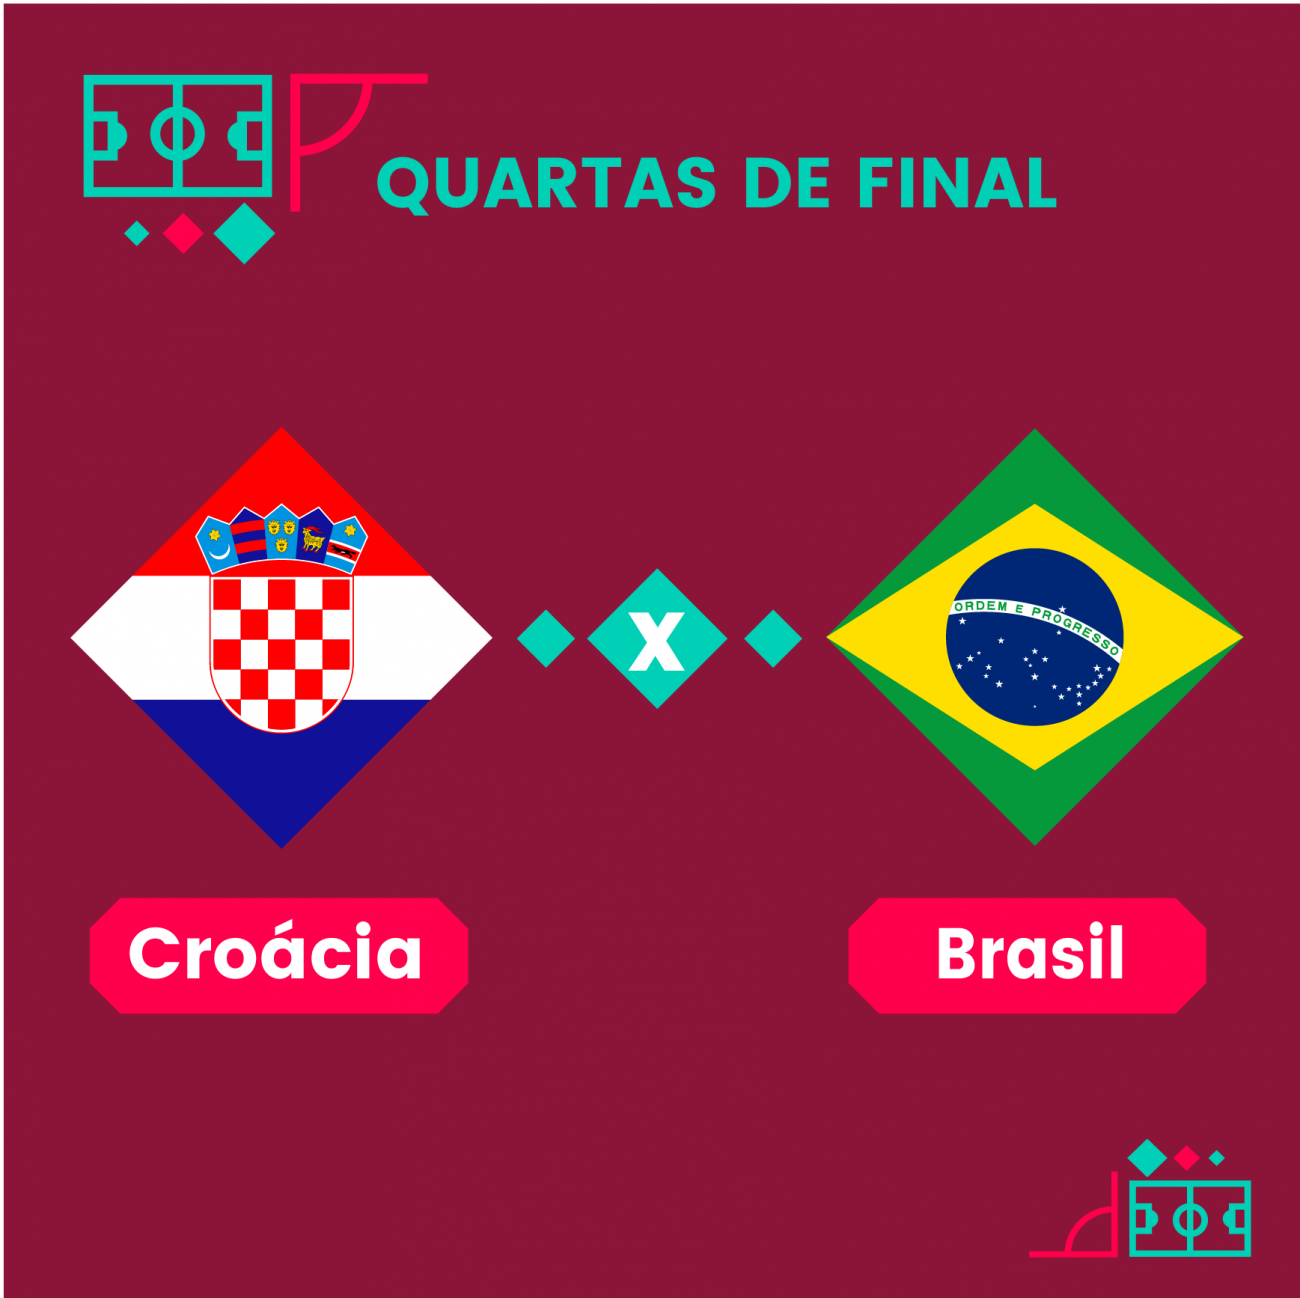 Escalação da Seleção: Tite confirma Brasil com Militão; Alex Sandro fica no  banco contra a Croácia, seleção brasileira